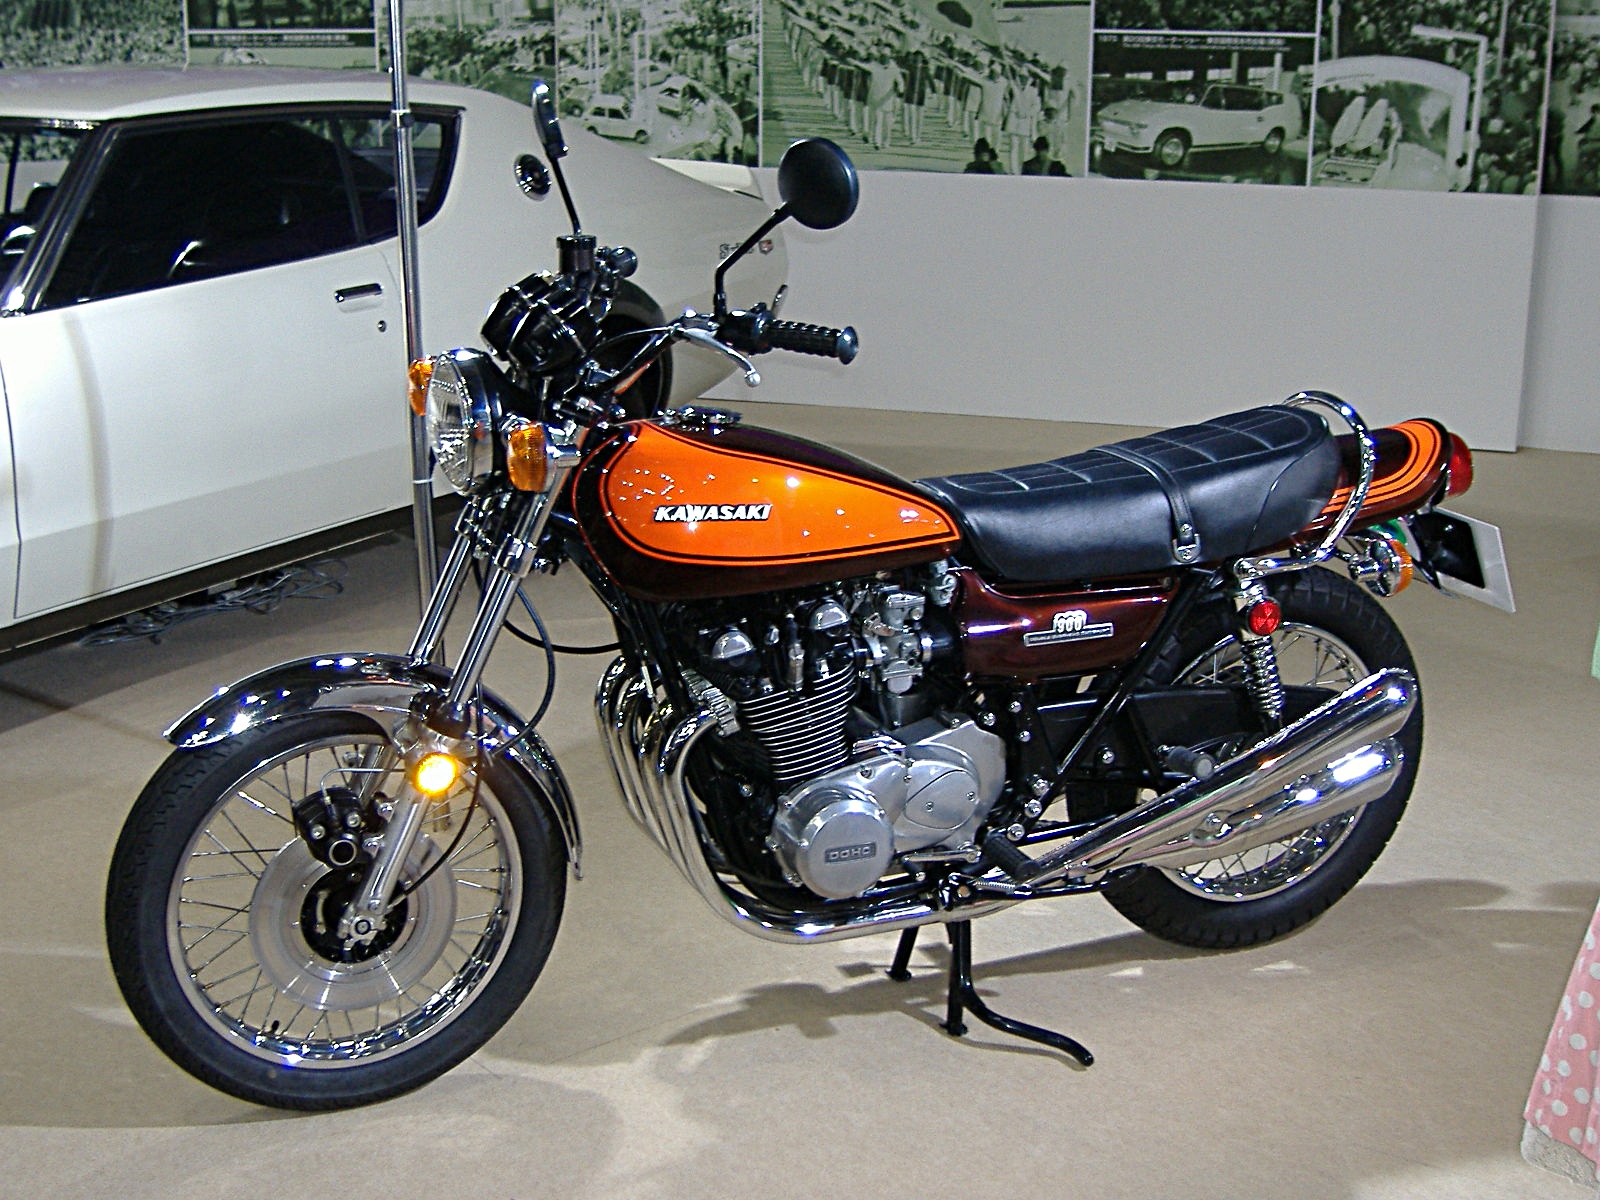 An image of a Kawasaki